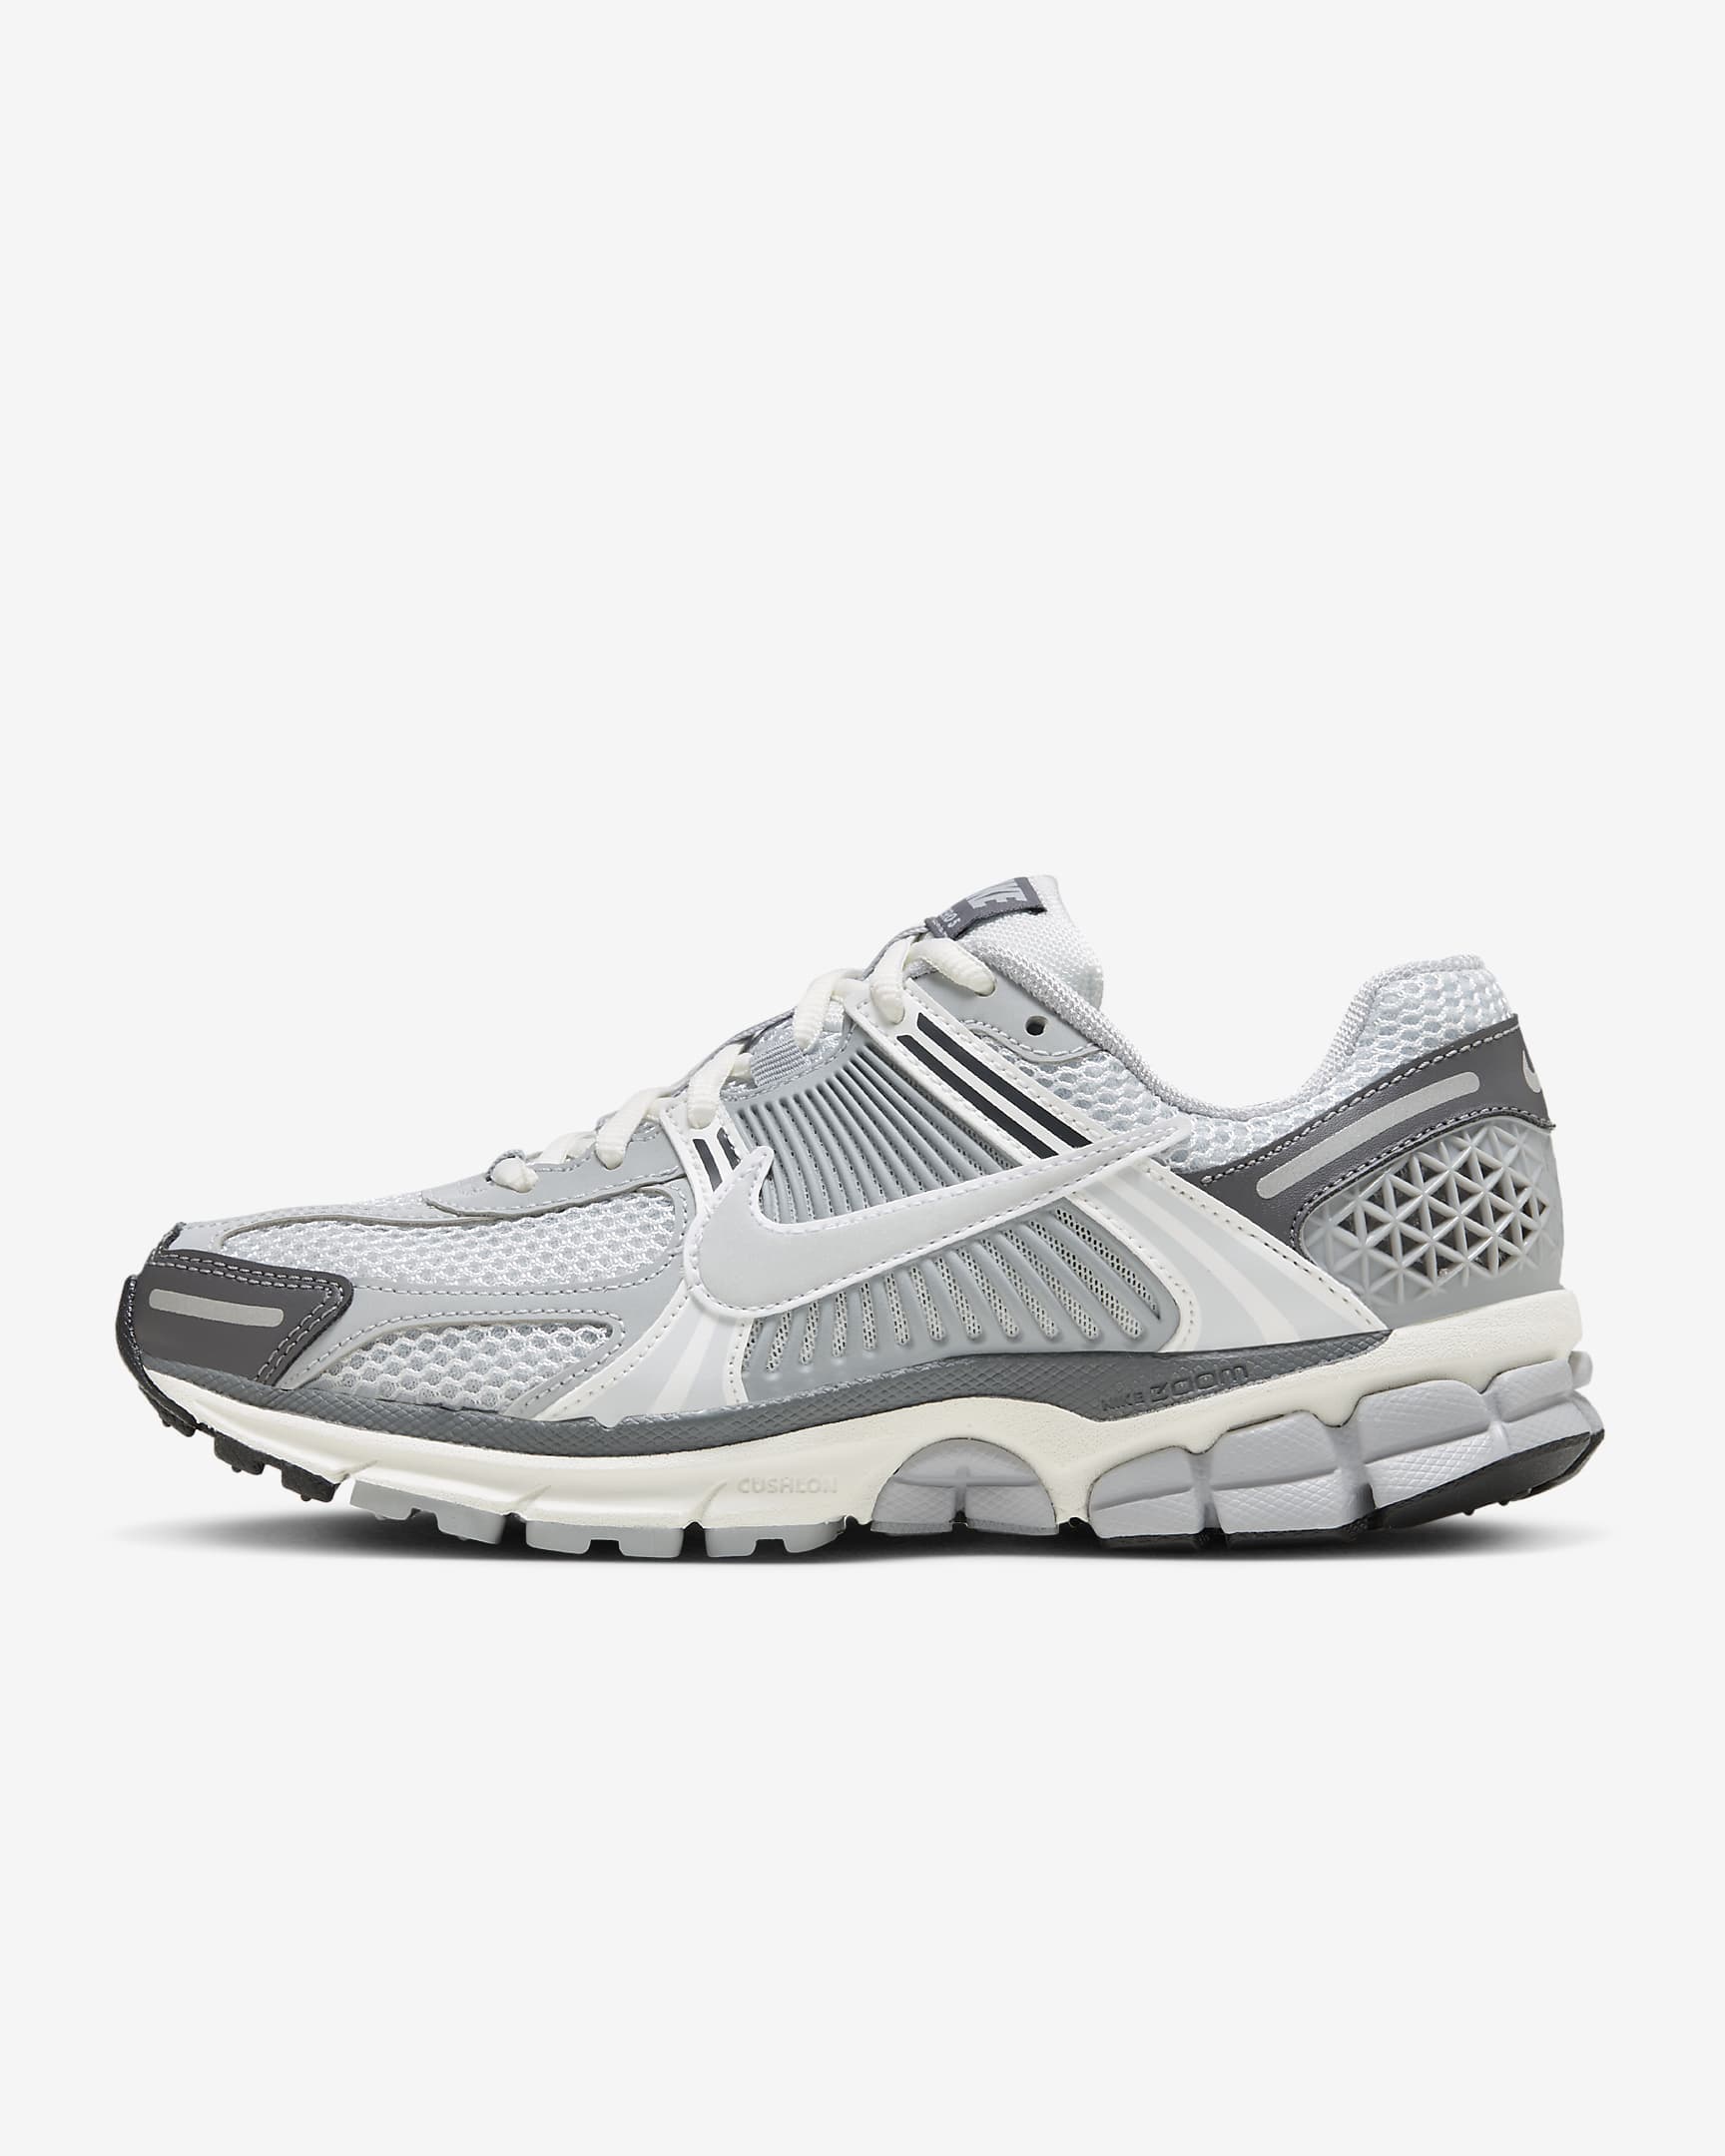 Chaussure Nike Zoom Vomero 5 pour femme - Pure Platinum/Summit White/Dark Grey/Metallic Silver